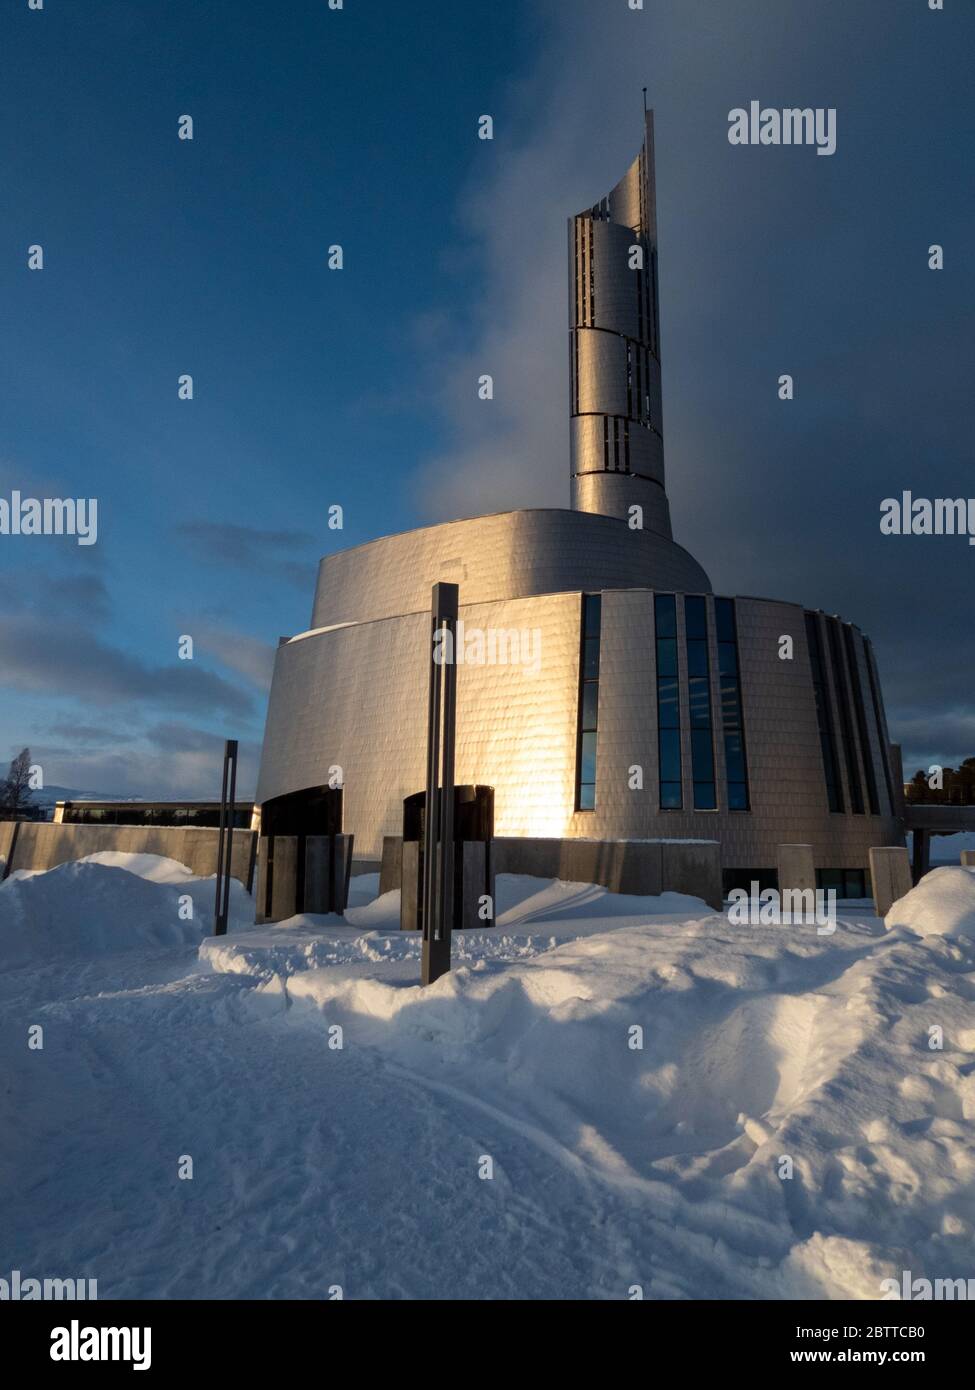 Die Nordlichtkahedrale, oder auch Alta-Kirche, ist die größte Kirche der norwegischen Stadt Alta und wurde von2011 bis 2013 erbaut. Foto de stock